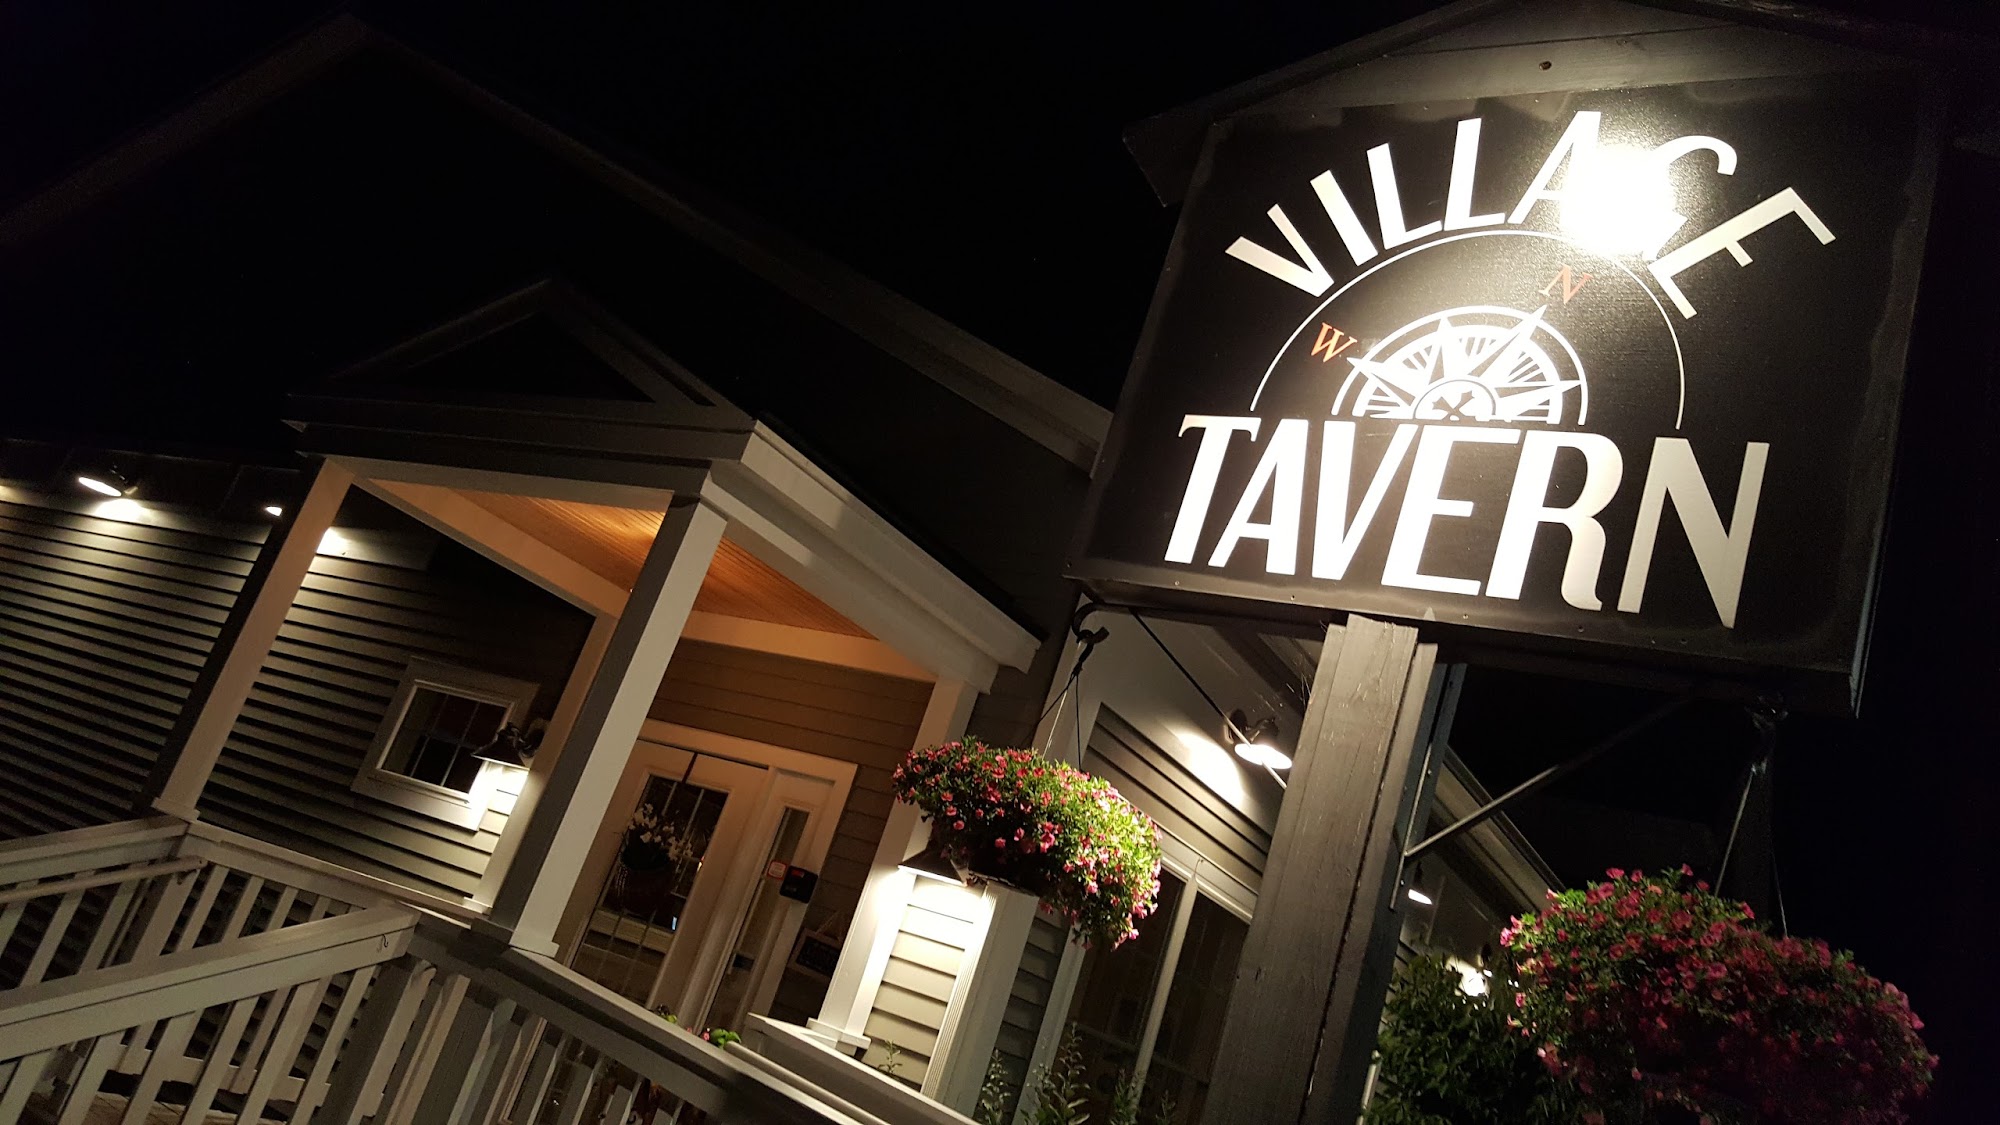 Village Tavern